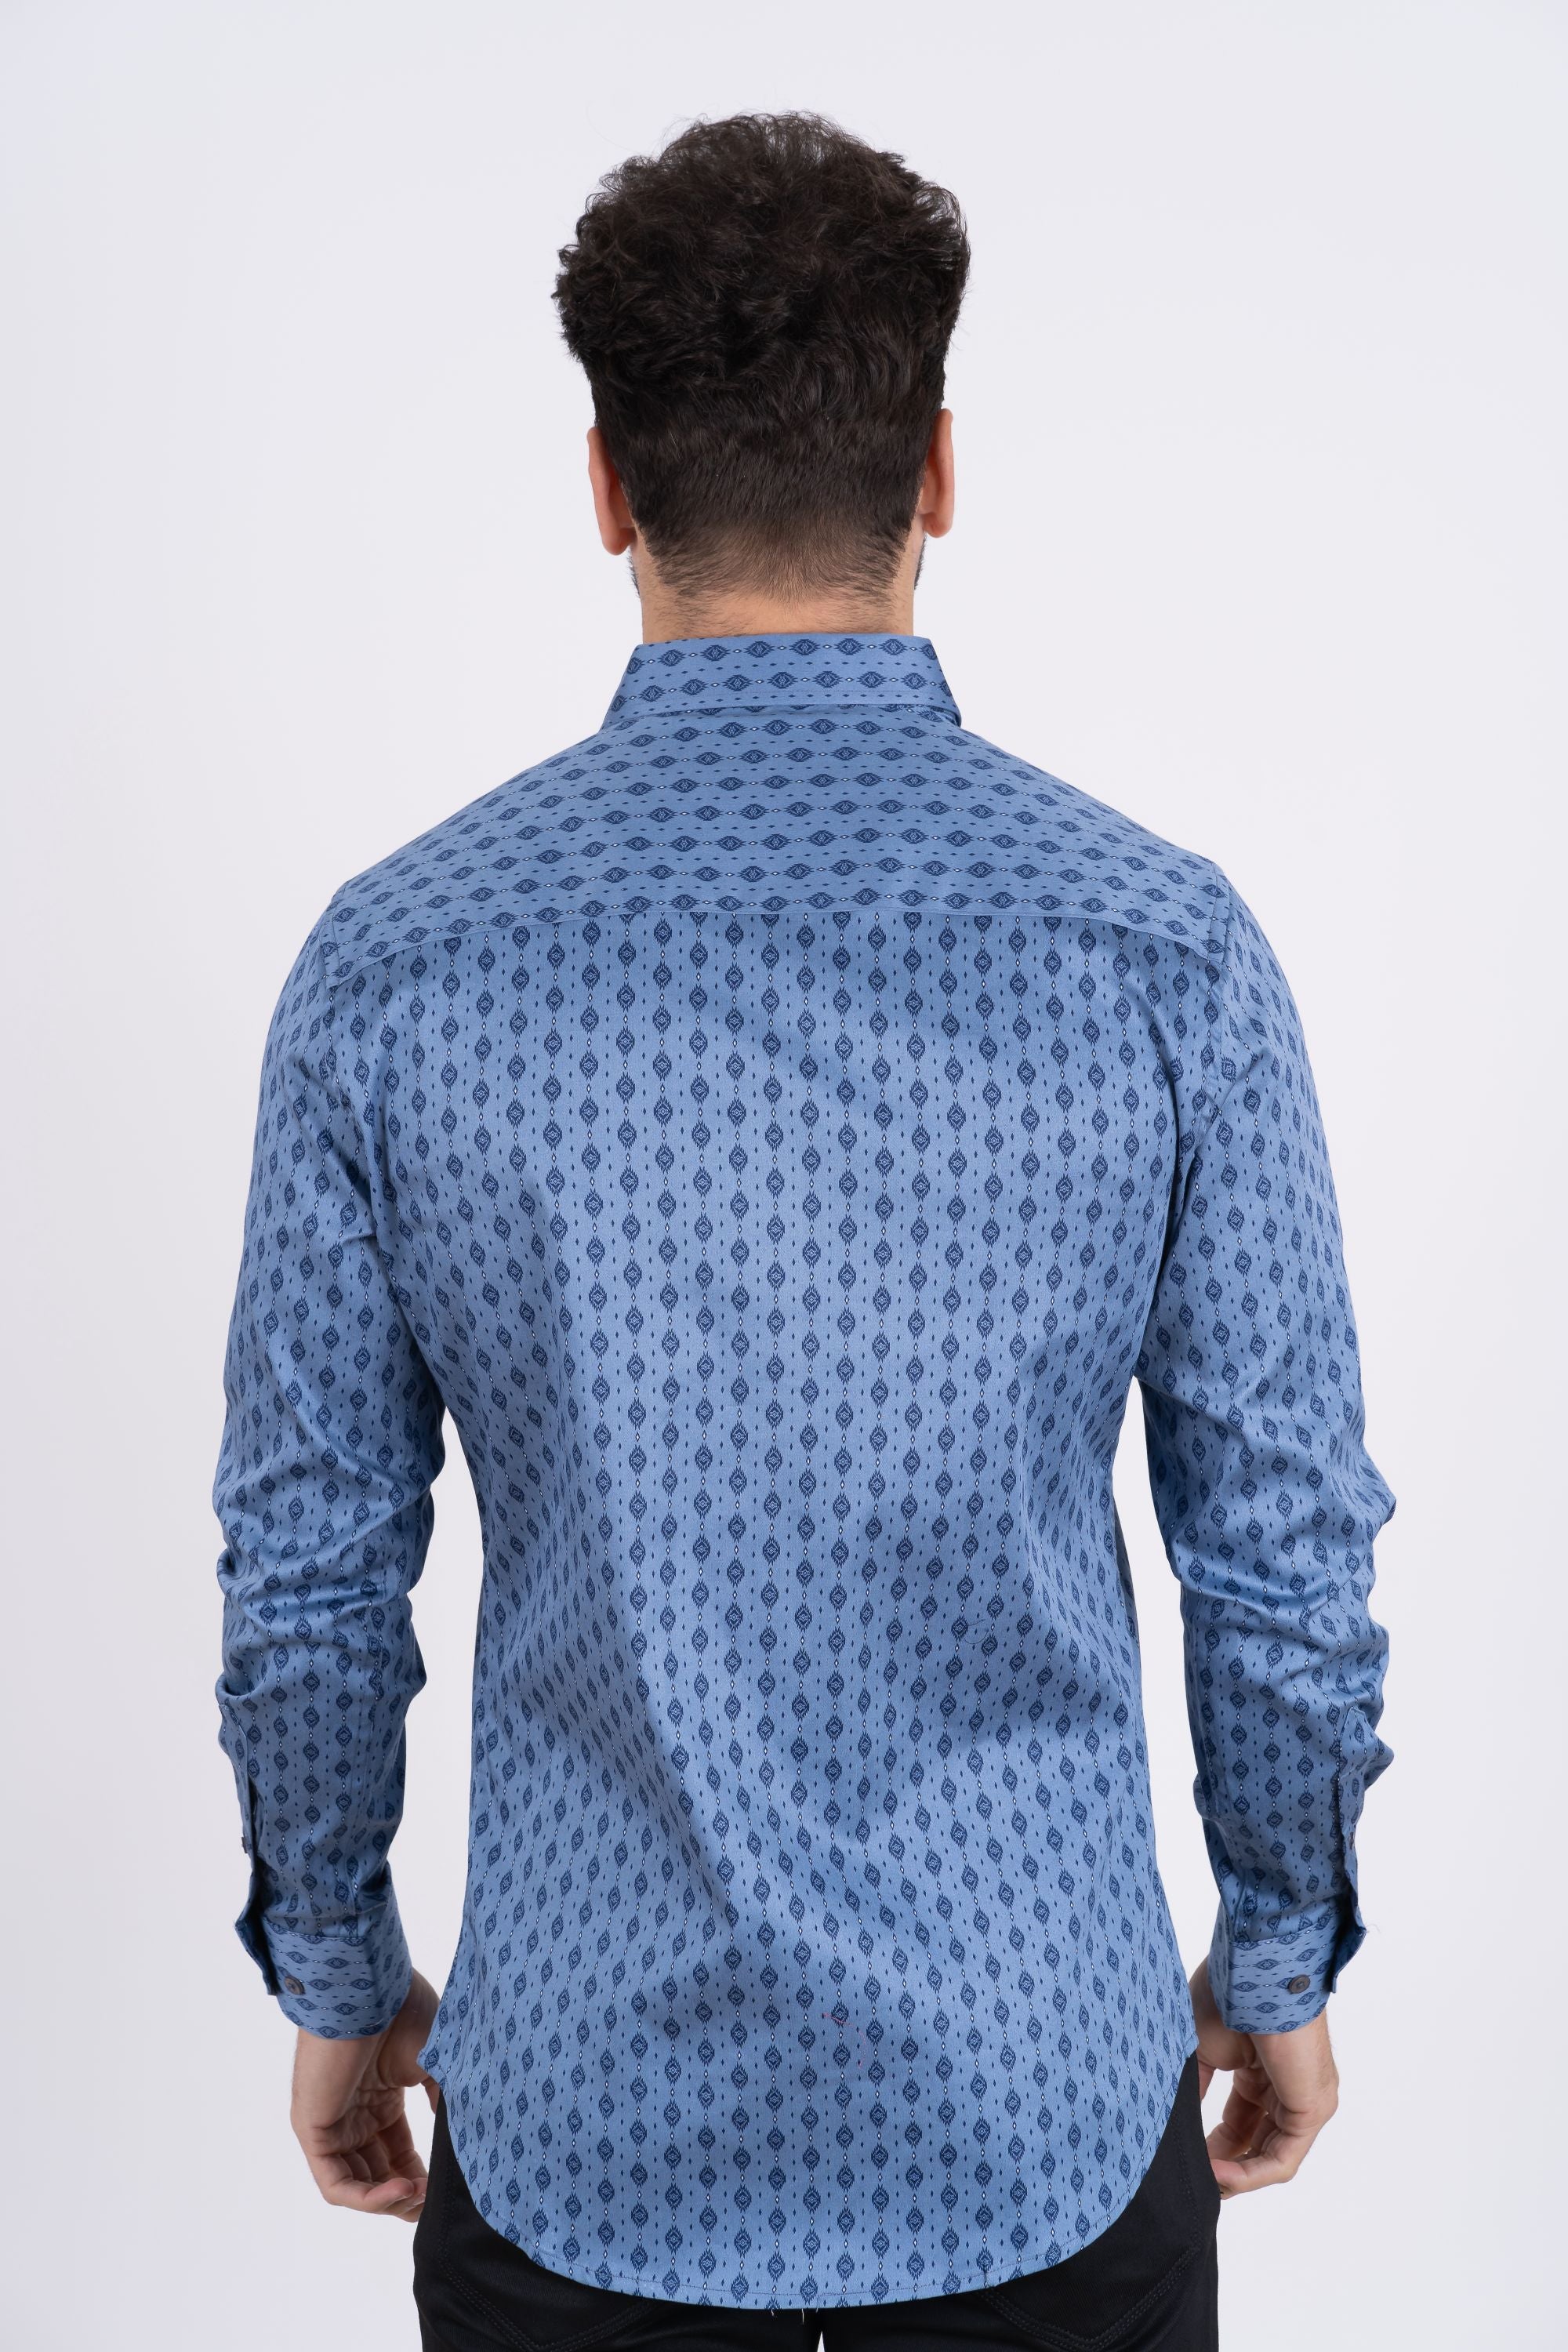 Magellan Sportswear Shirt Adult XXL Blue Long Sleeve Button Up